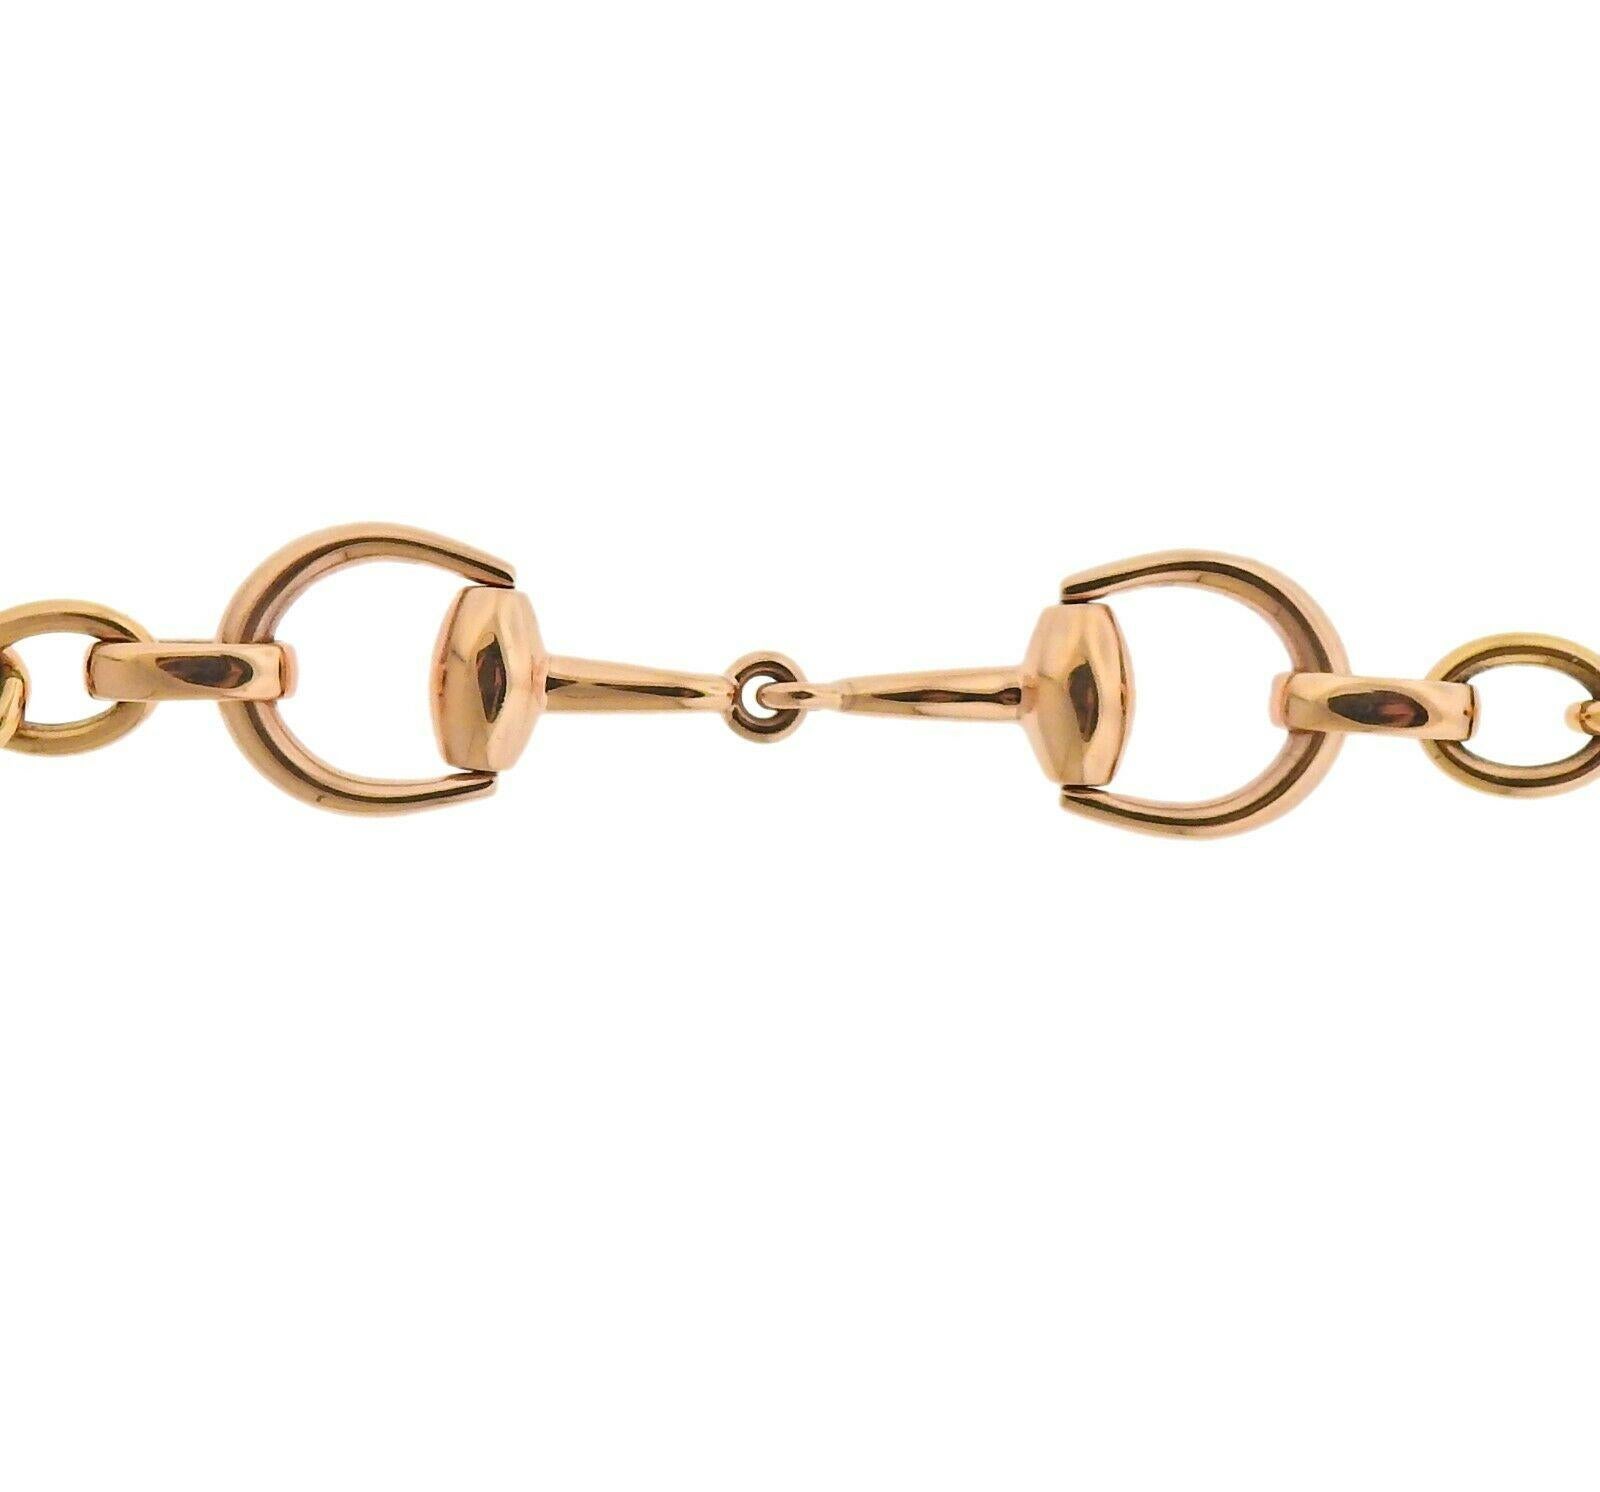 New Gucci Horsebit 18k rose gold link bracelet.  Bracelet is 7.5